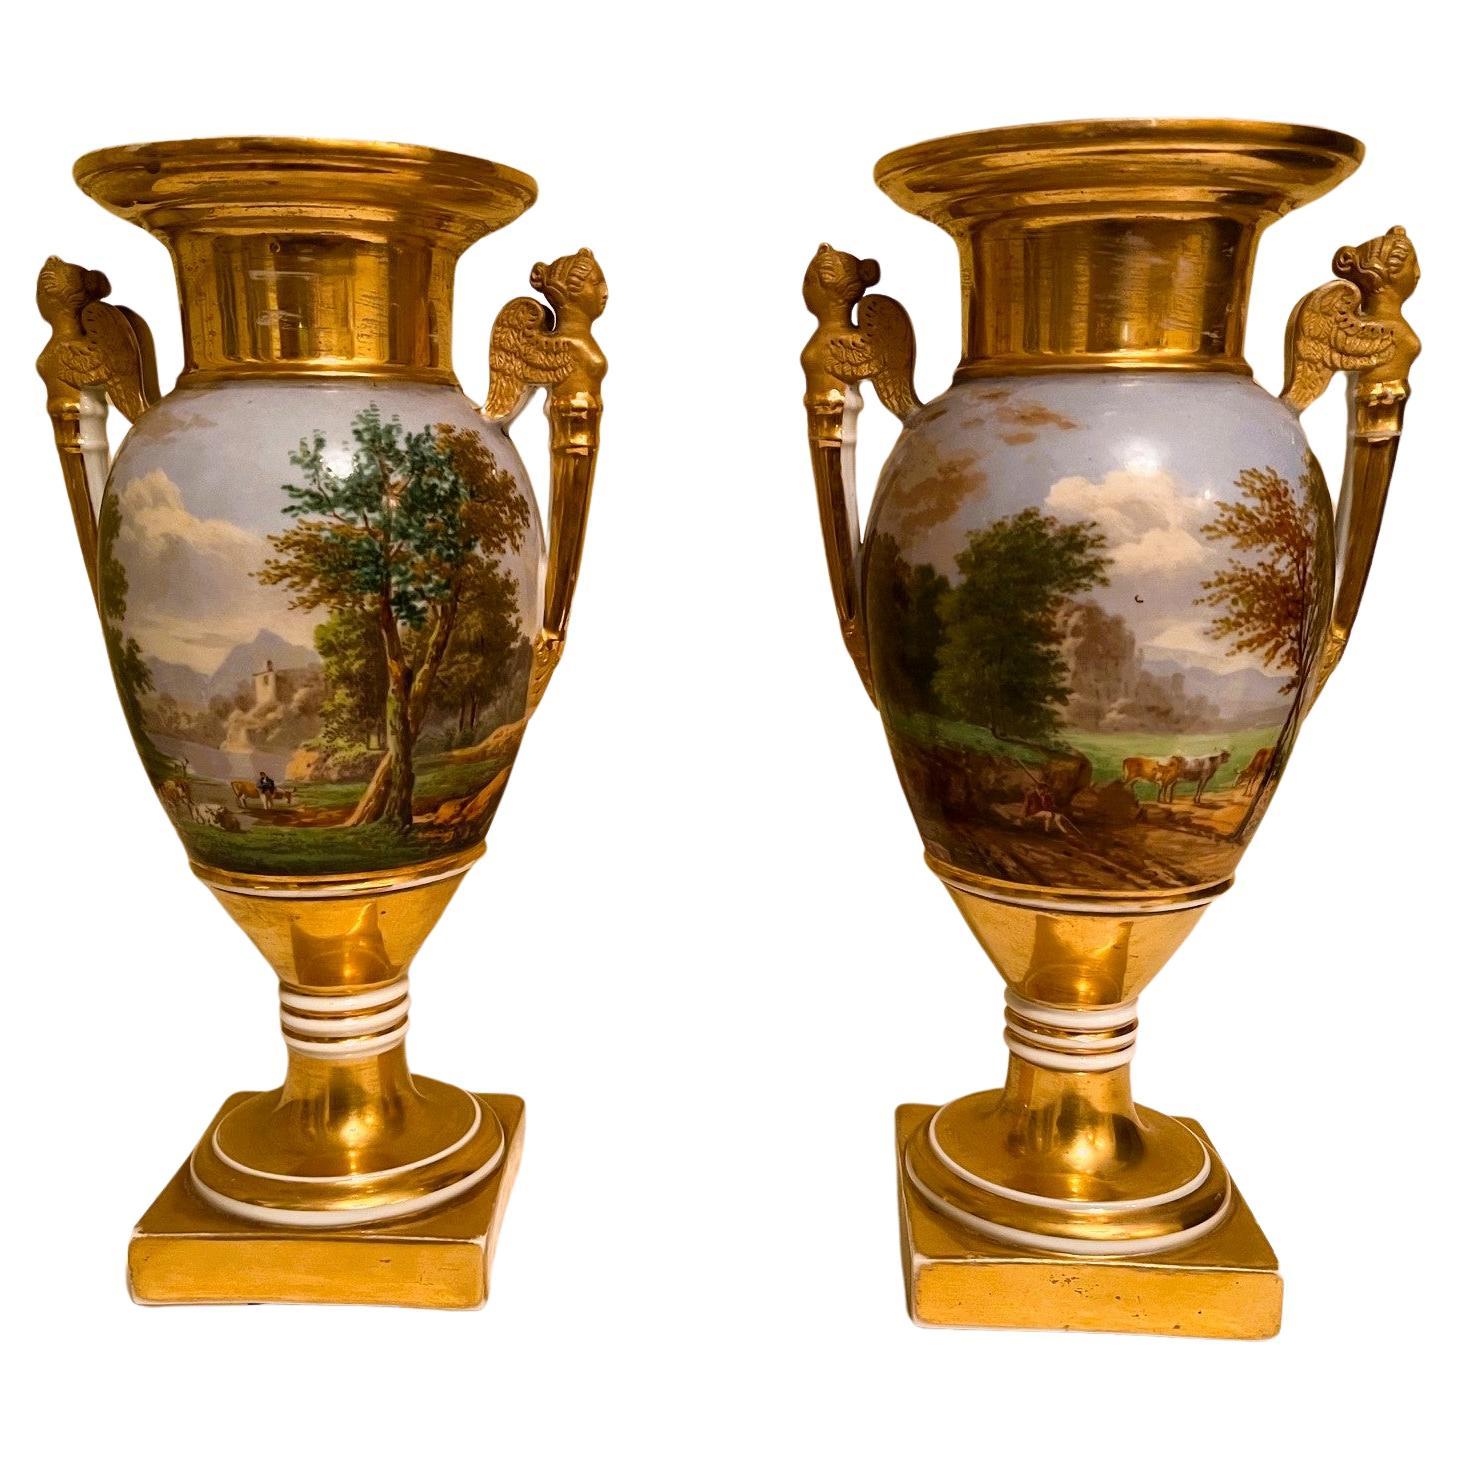 A Pair of Porcelain de Paris Ovid Form Vases, Circa:1820